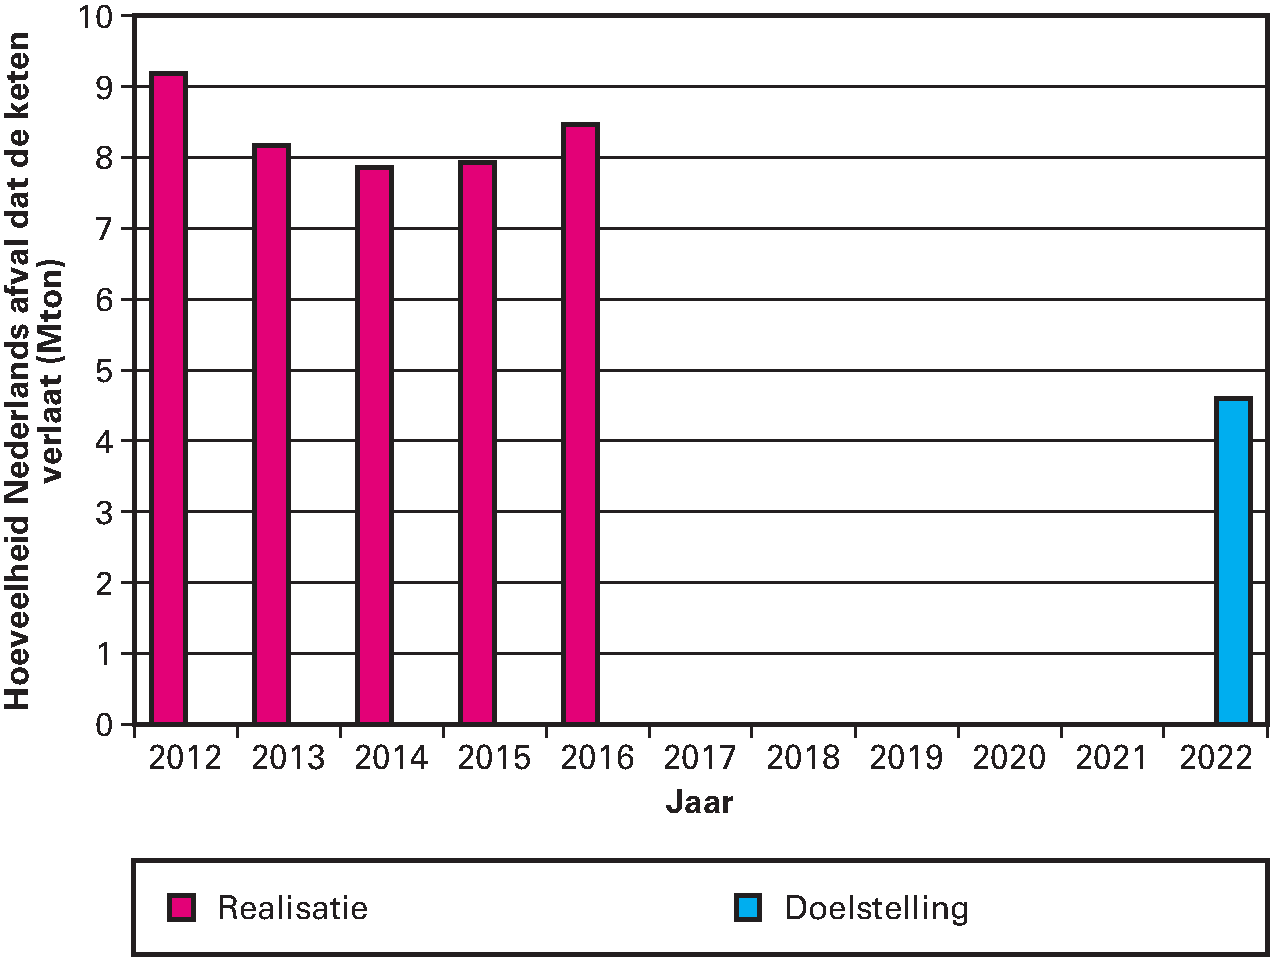 Grafiek 1: De «hoeveelheid Nederlands afval die de keten verlaat» en doelstelling die van 2012 tot 2022 te halveren (cf. Uitvoeringsagenda VANG) (Mton)